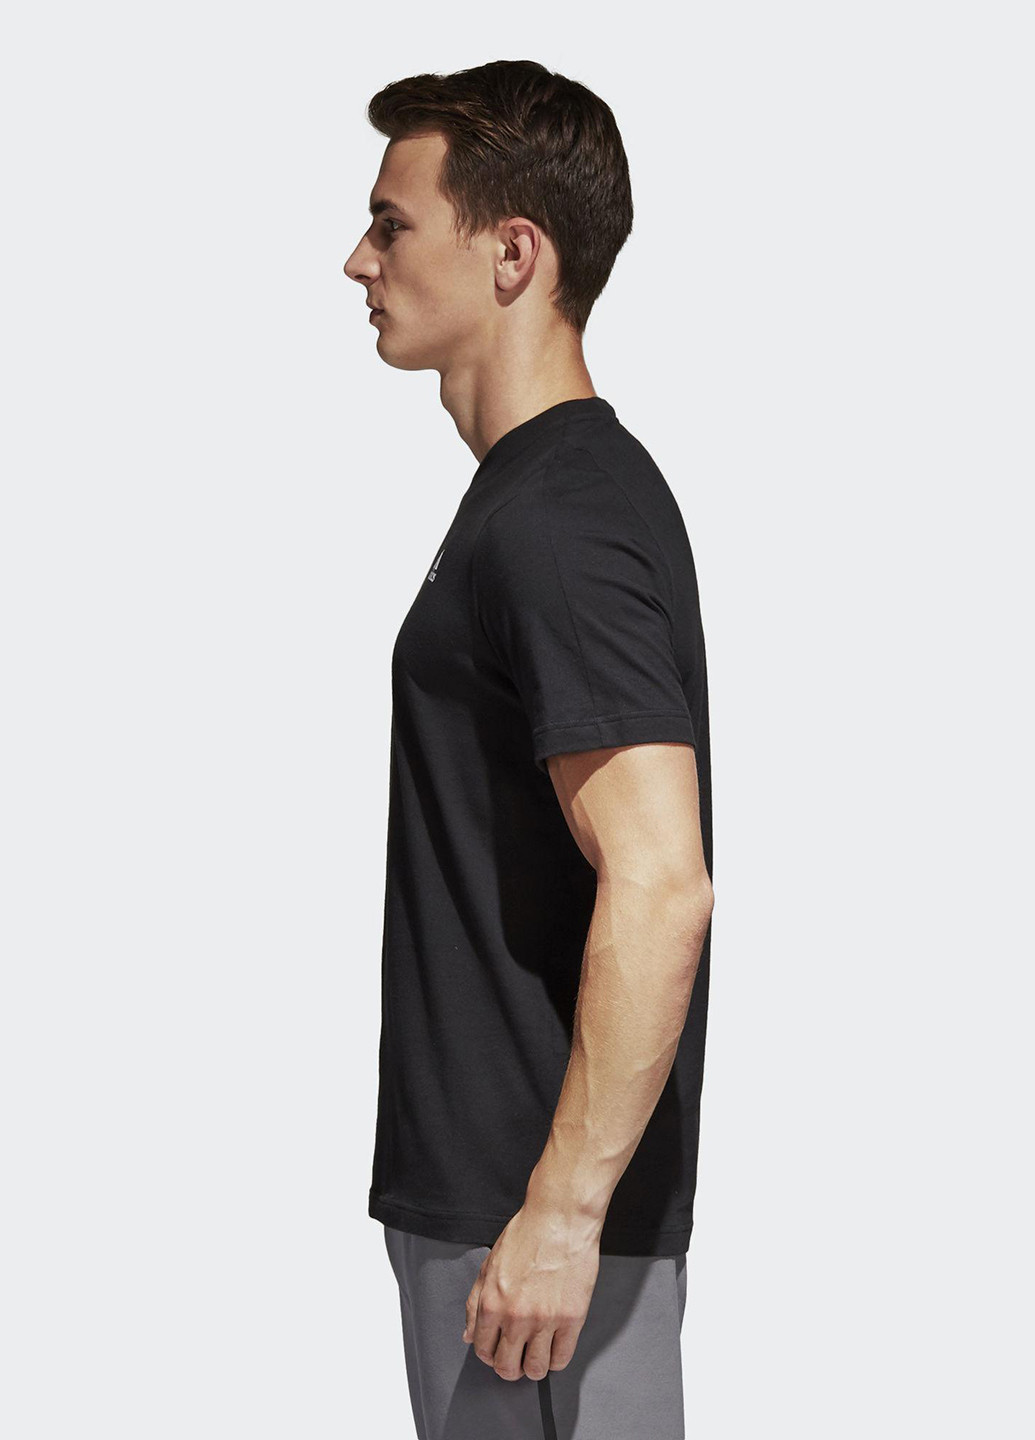 Черная футболка с коротким рукавом adidas